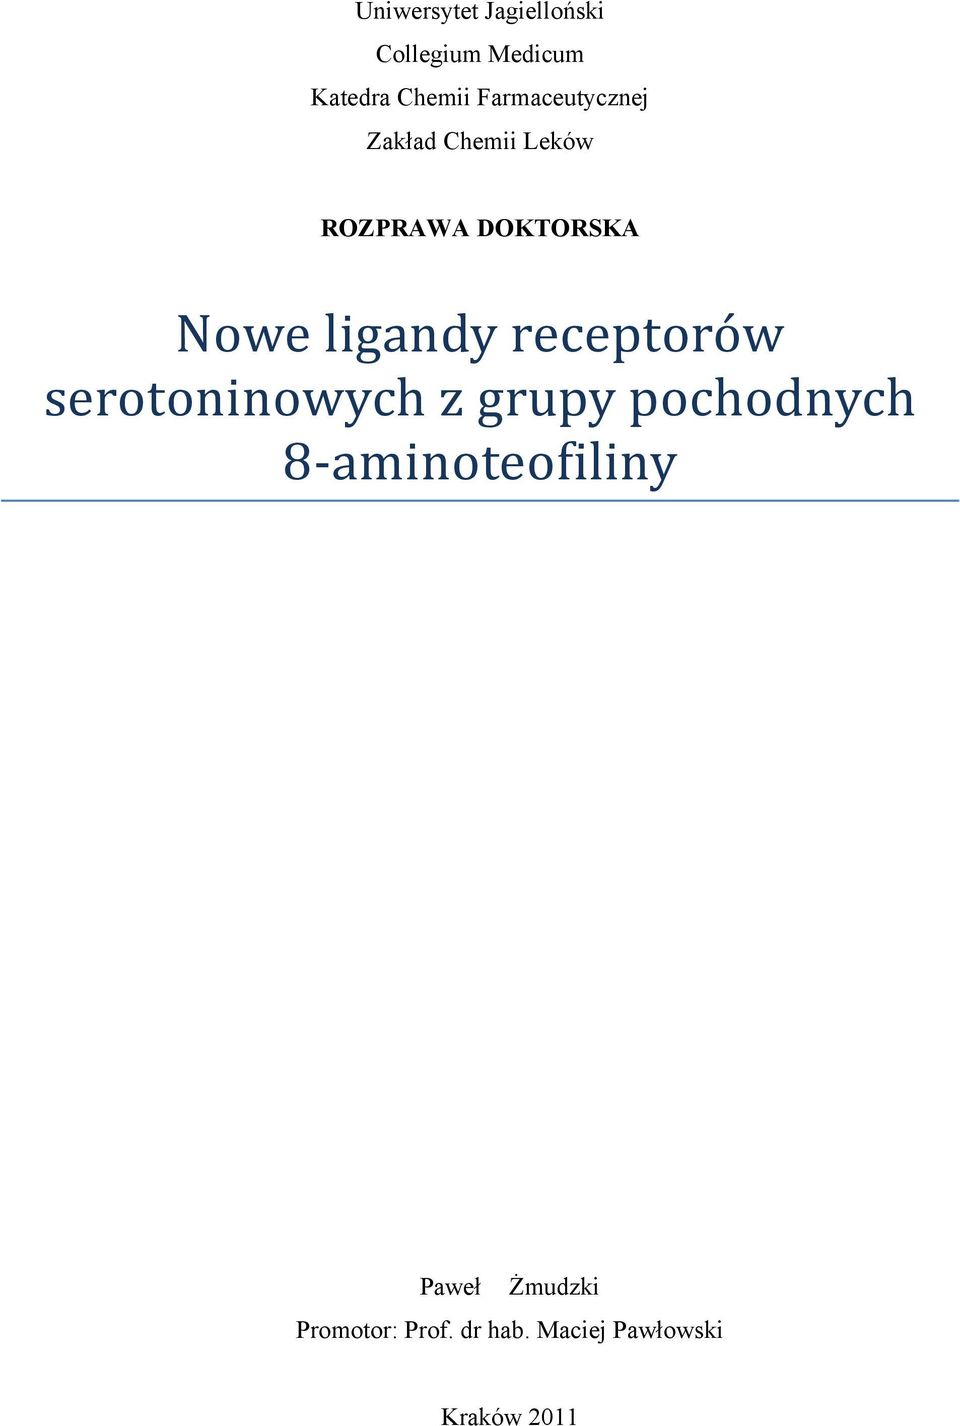 ligandy receptorów serotoninowych z grupy pochodnych 8